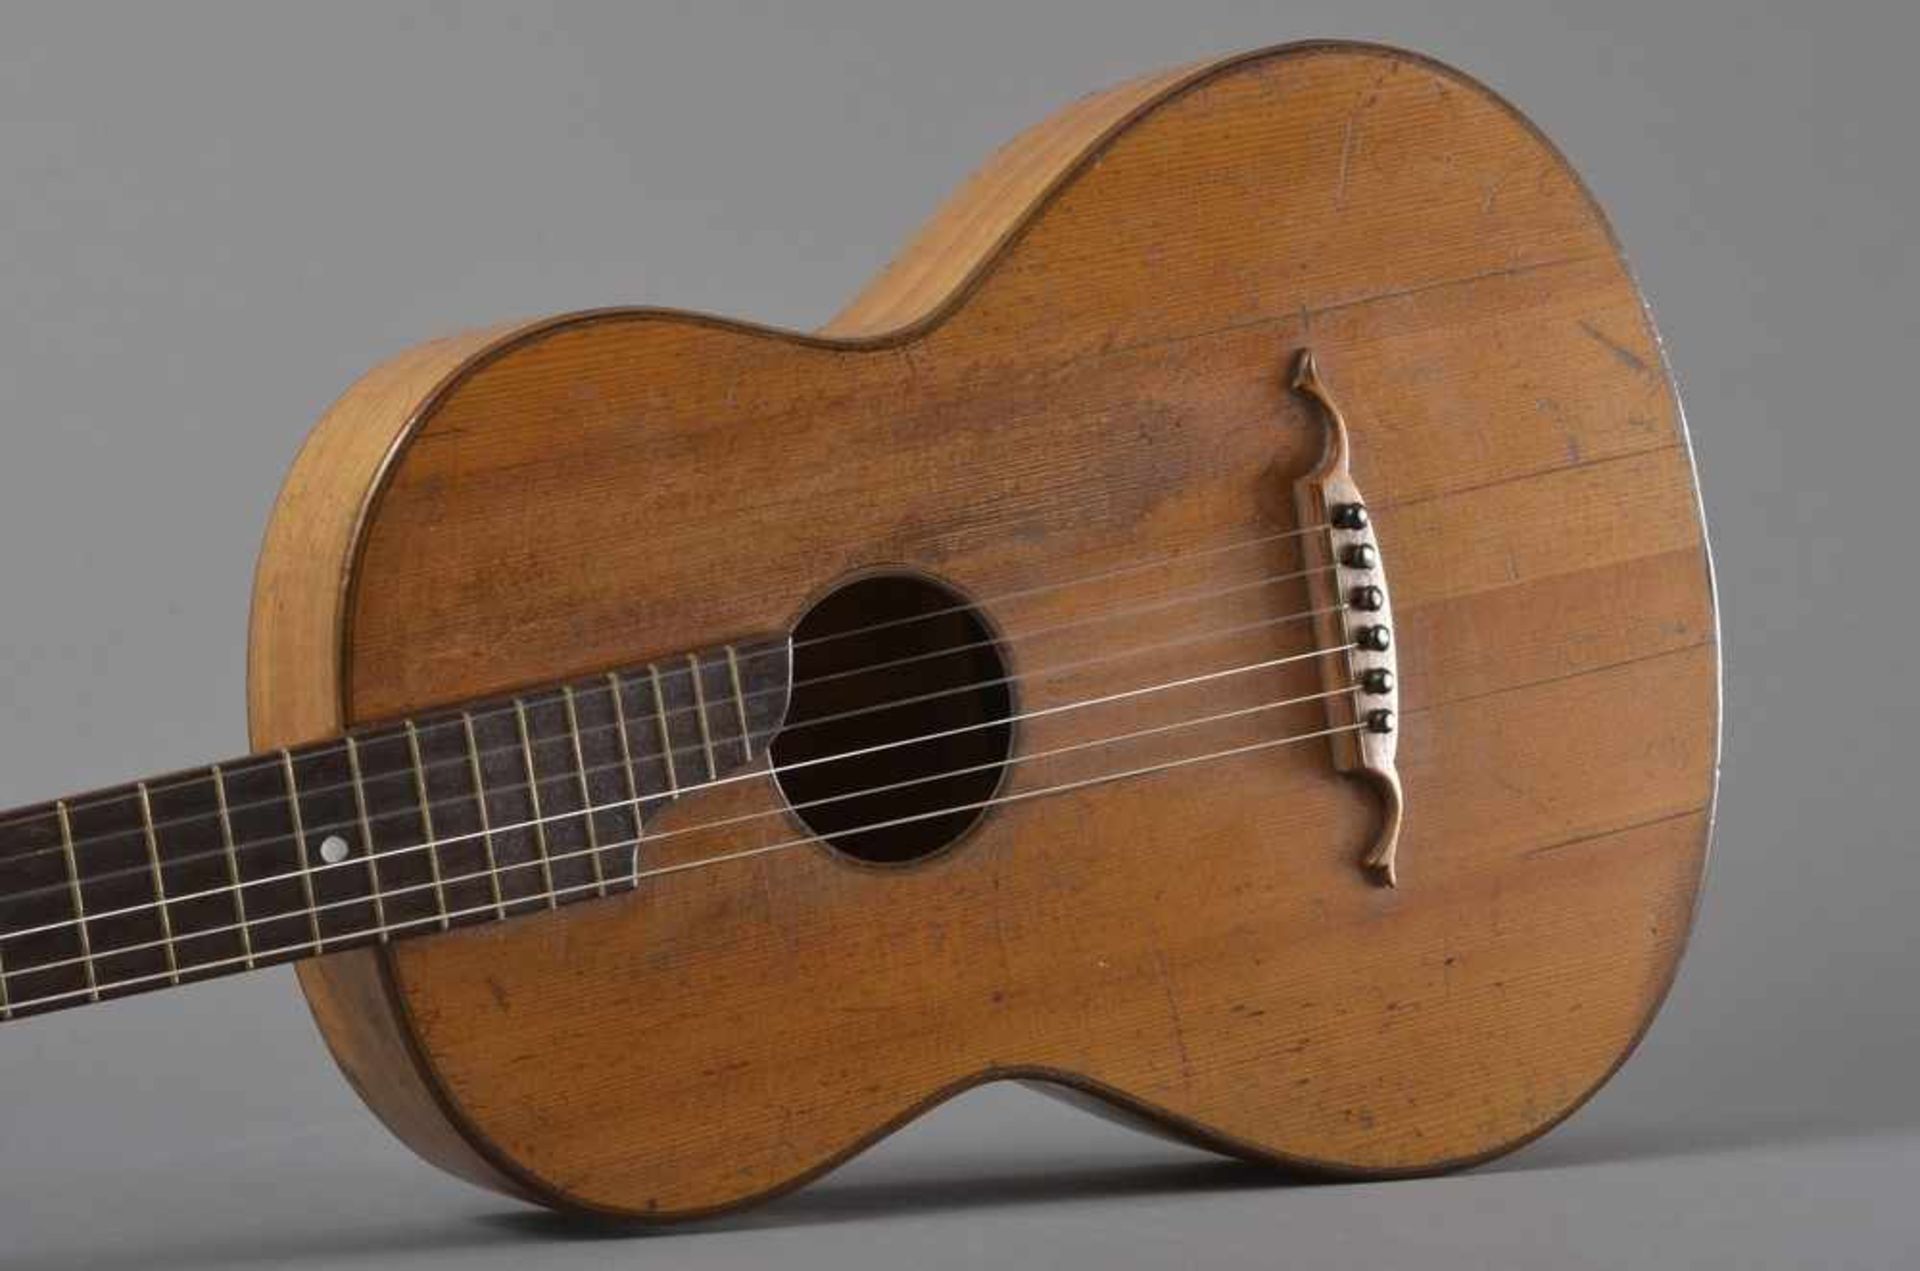 Historische Gitarre, Mensur 62cm, Gesamtlänge 93cm, Saitenhöhe 4mm, ca. 100 Jahre alt, spielbar - Bild 4 aus 8